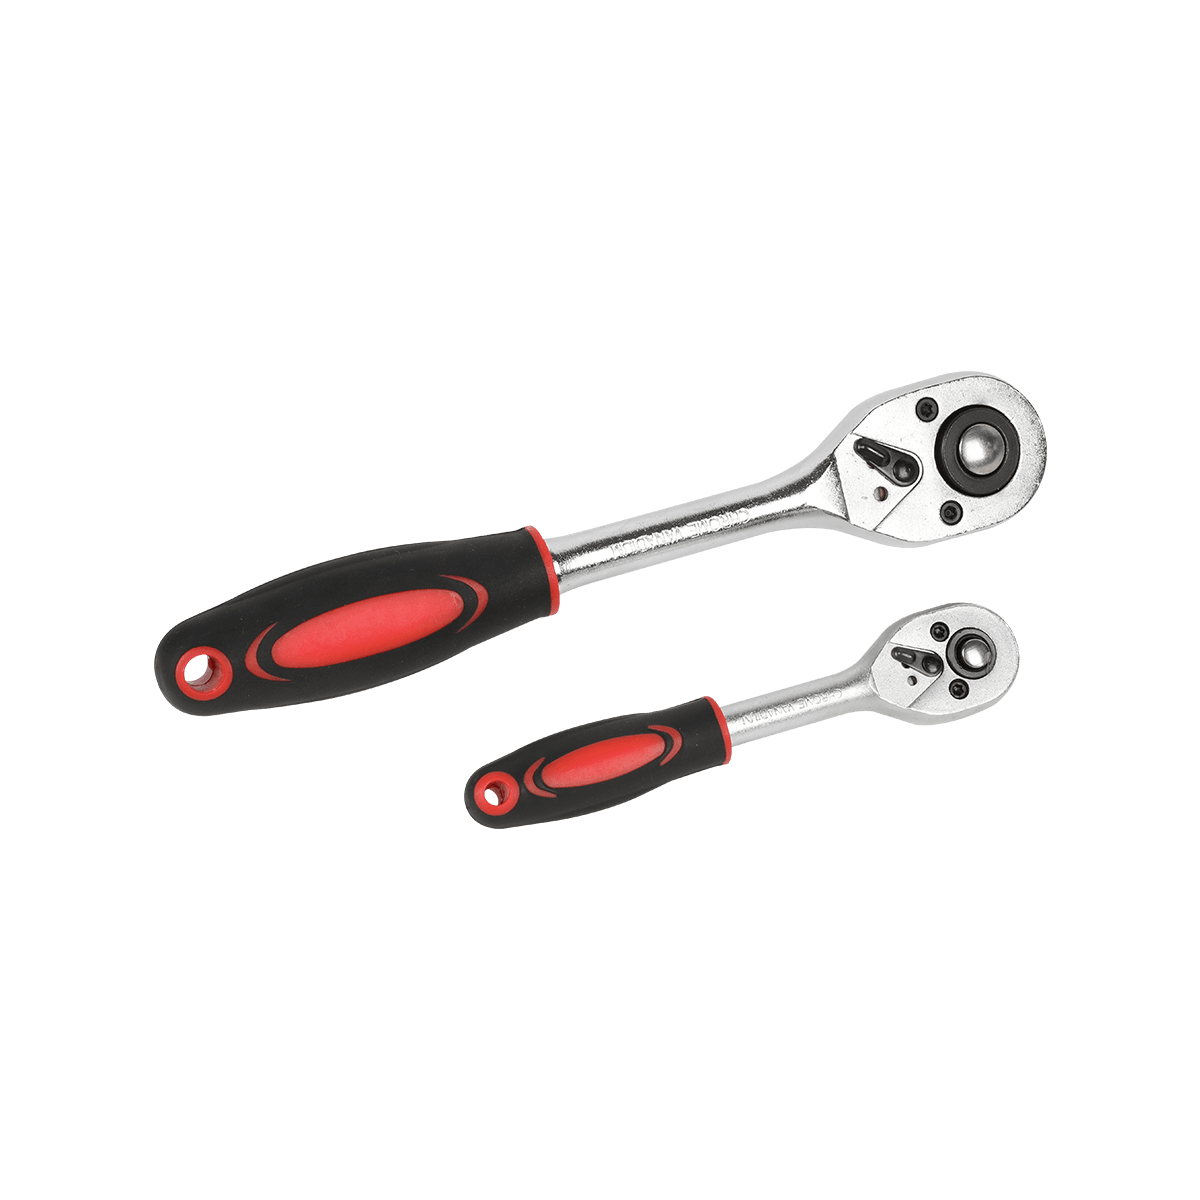 94개 자동차 도구 래칫 렌치 스패너 조합 자동차 수리 도구 키트